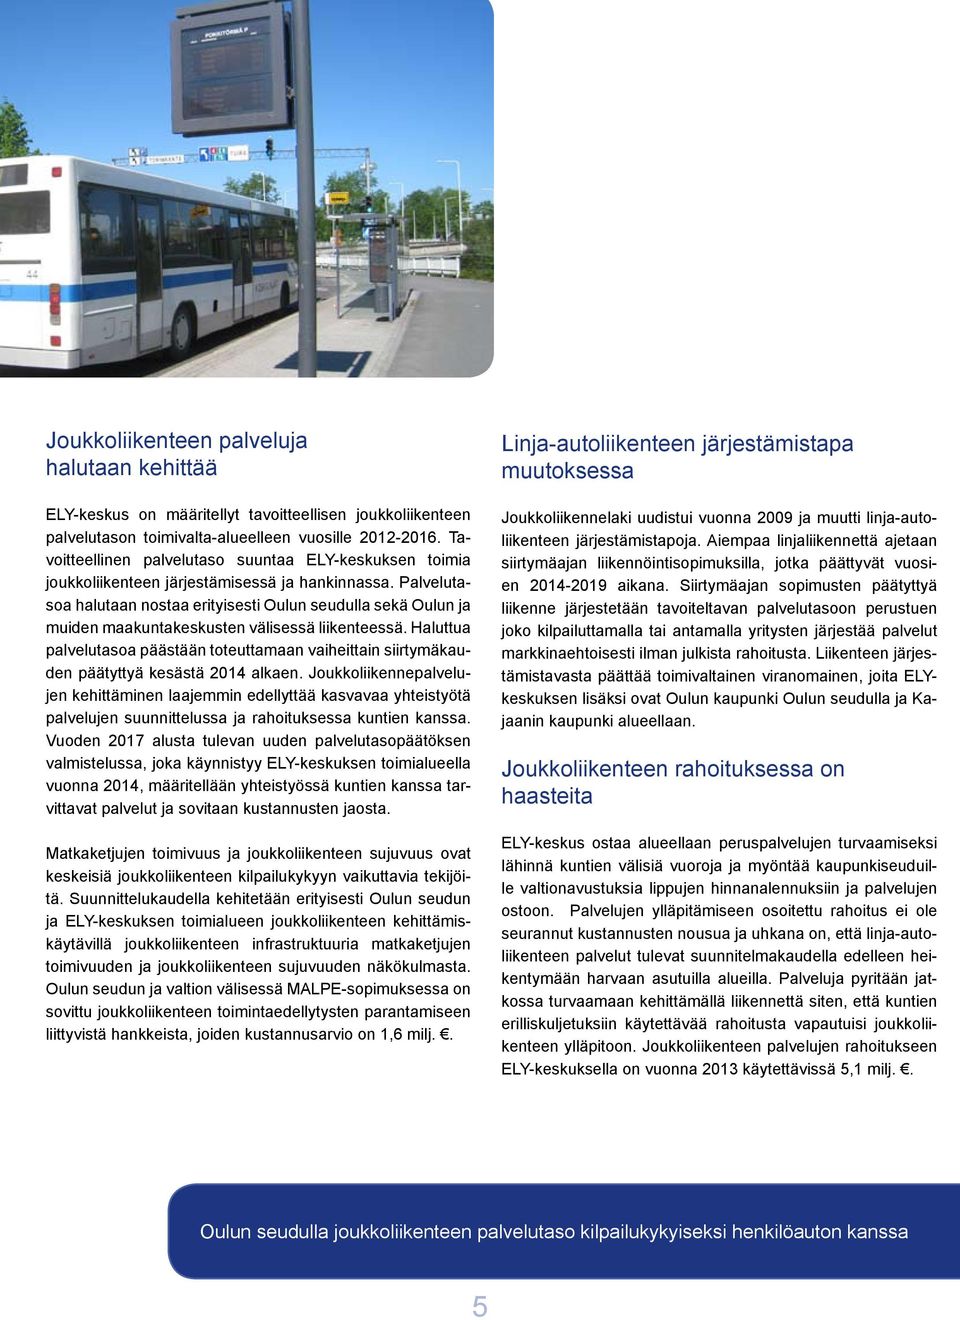 Palvelutasoa halutaan nostaa erityisesti Oulun seudulla sekä Oulun ja muiden maakuntakeskusten välisessä liikenteessä.